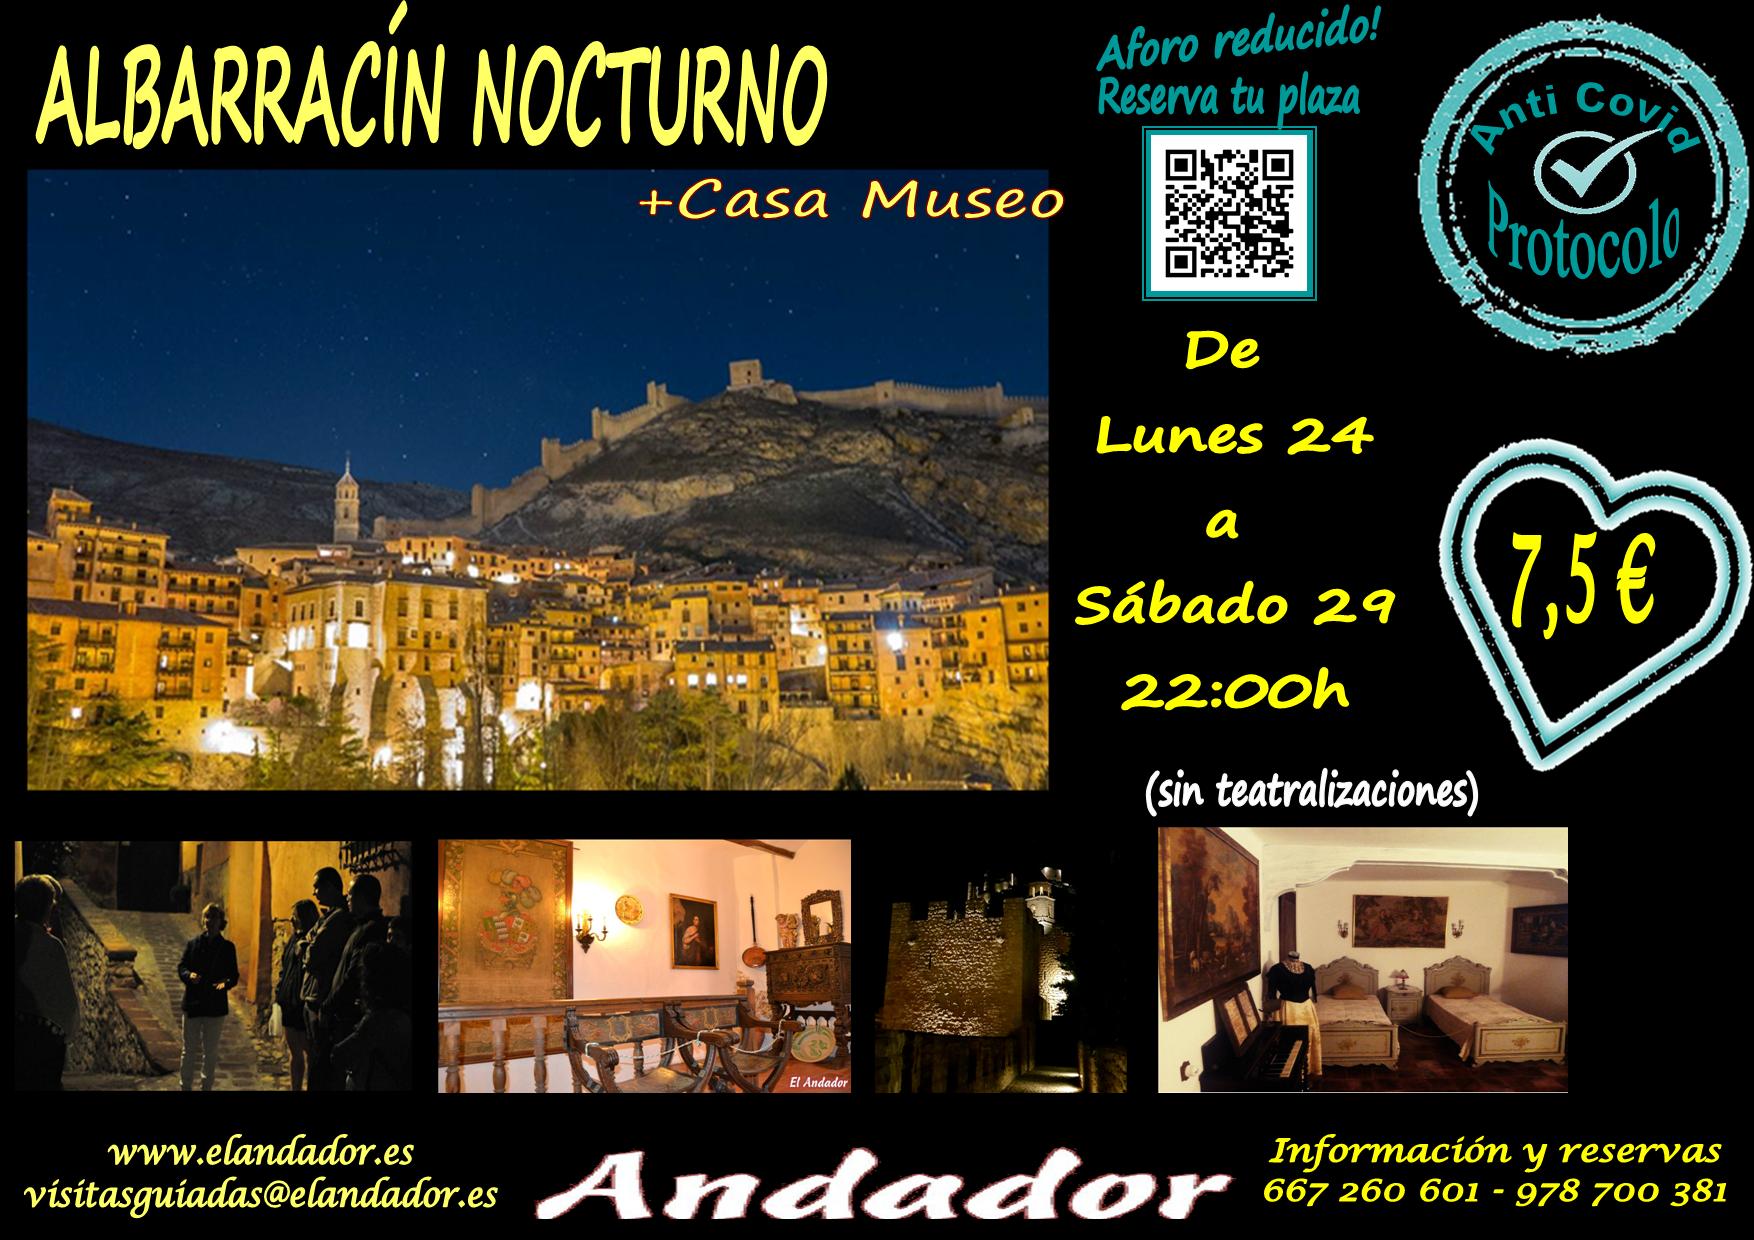 Del Lunes 24 al Sábado 30… Albarracín Nocturno!! No te lo pierdas!